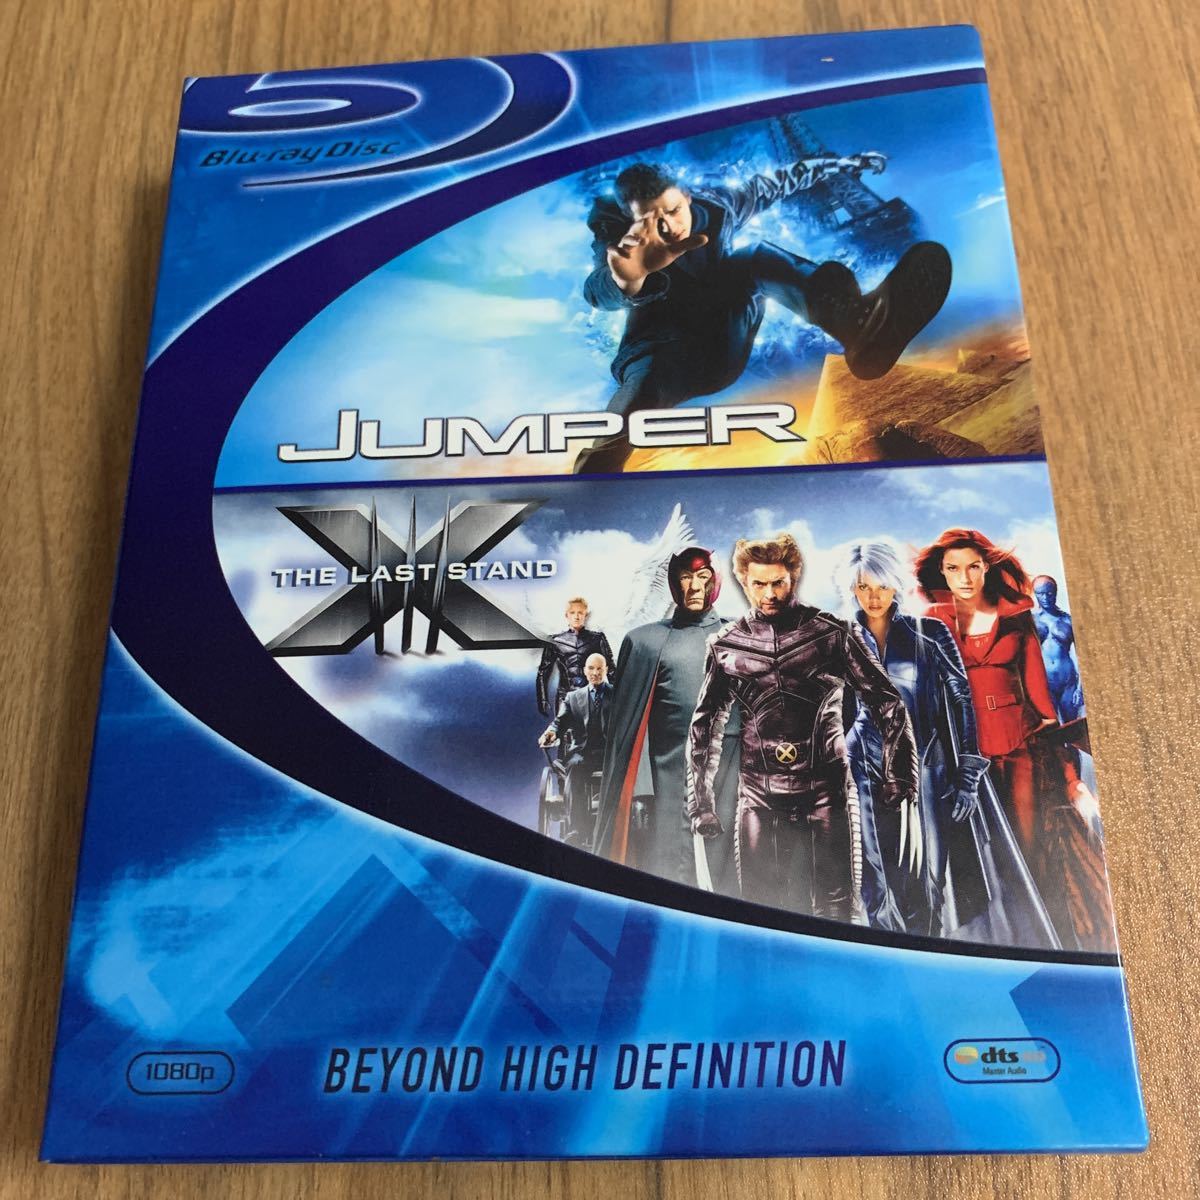 Blu-ray★ 「ジャンパー」発売記念アクションパック ブルーレイディスク2枚組 「ジャンパー」×「X-MEN:ファイナル・ディシジョン」_画像1